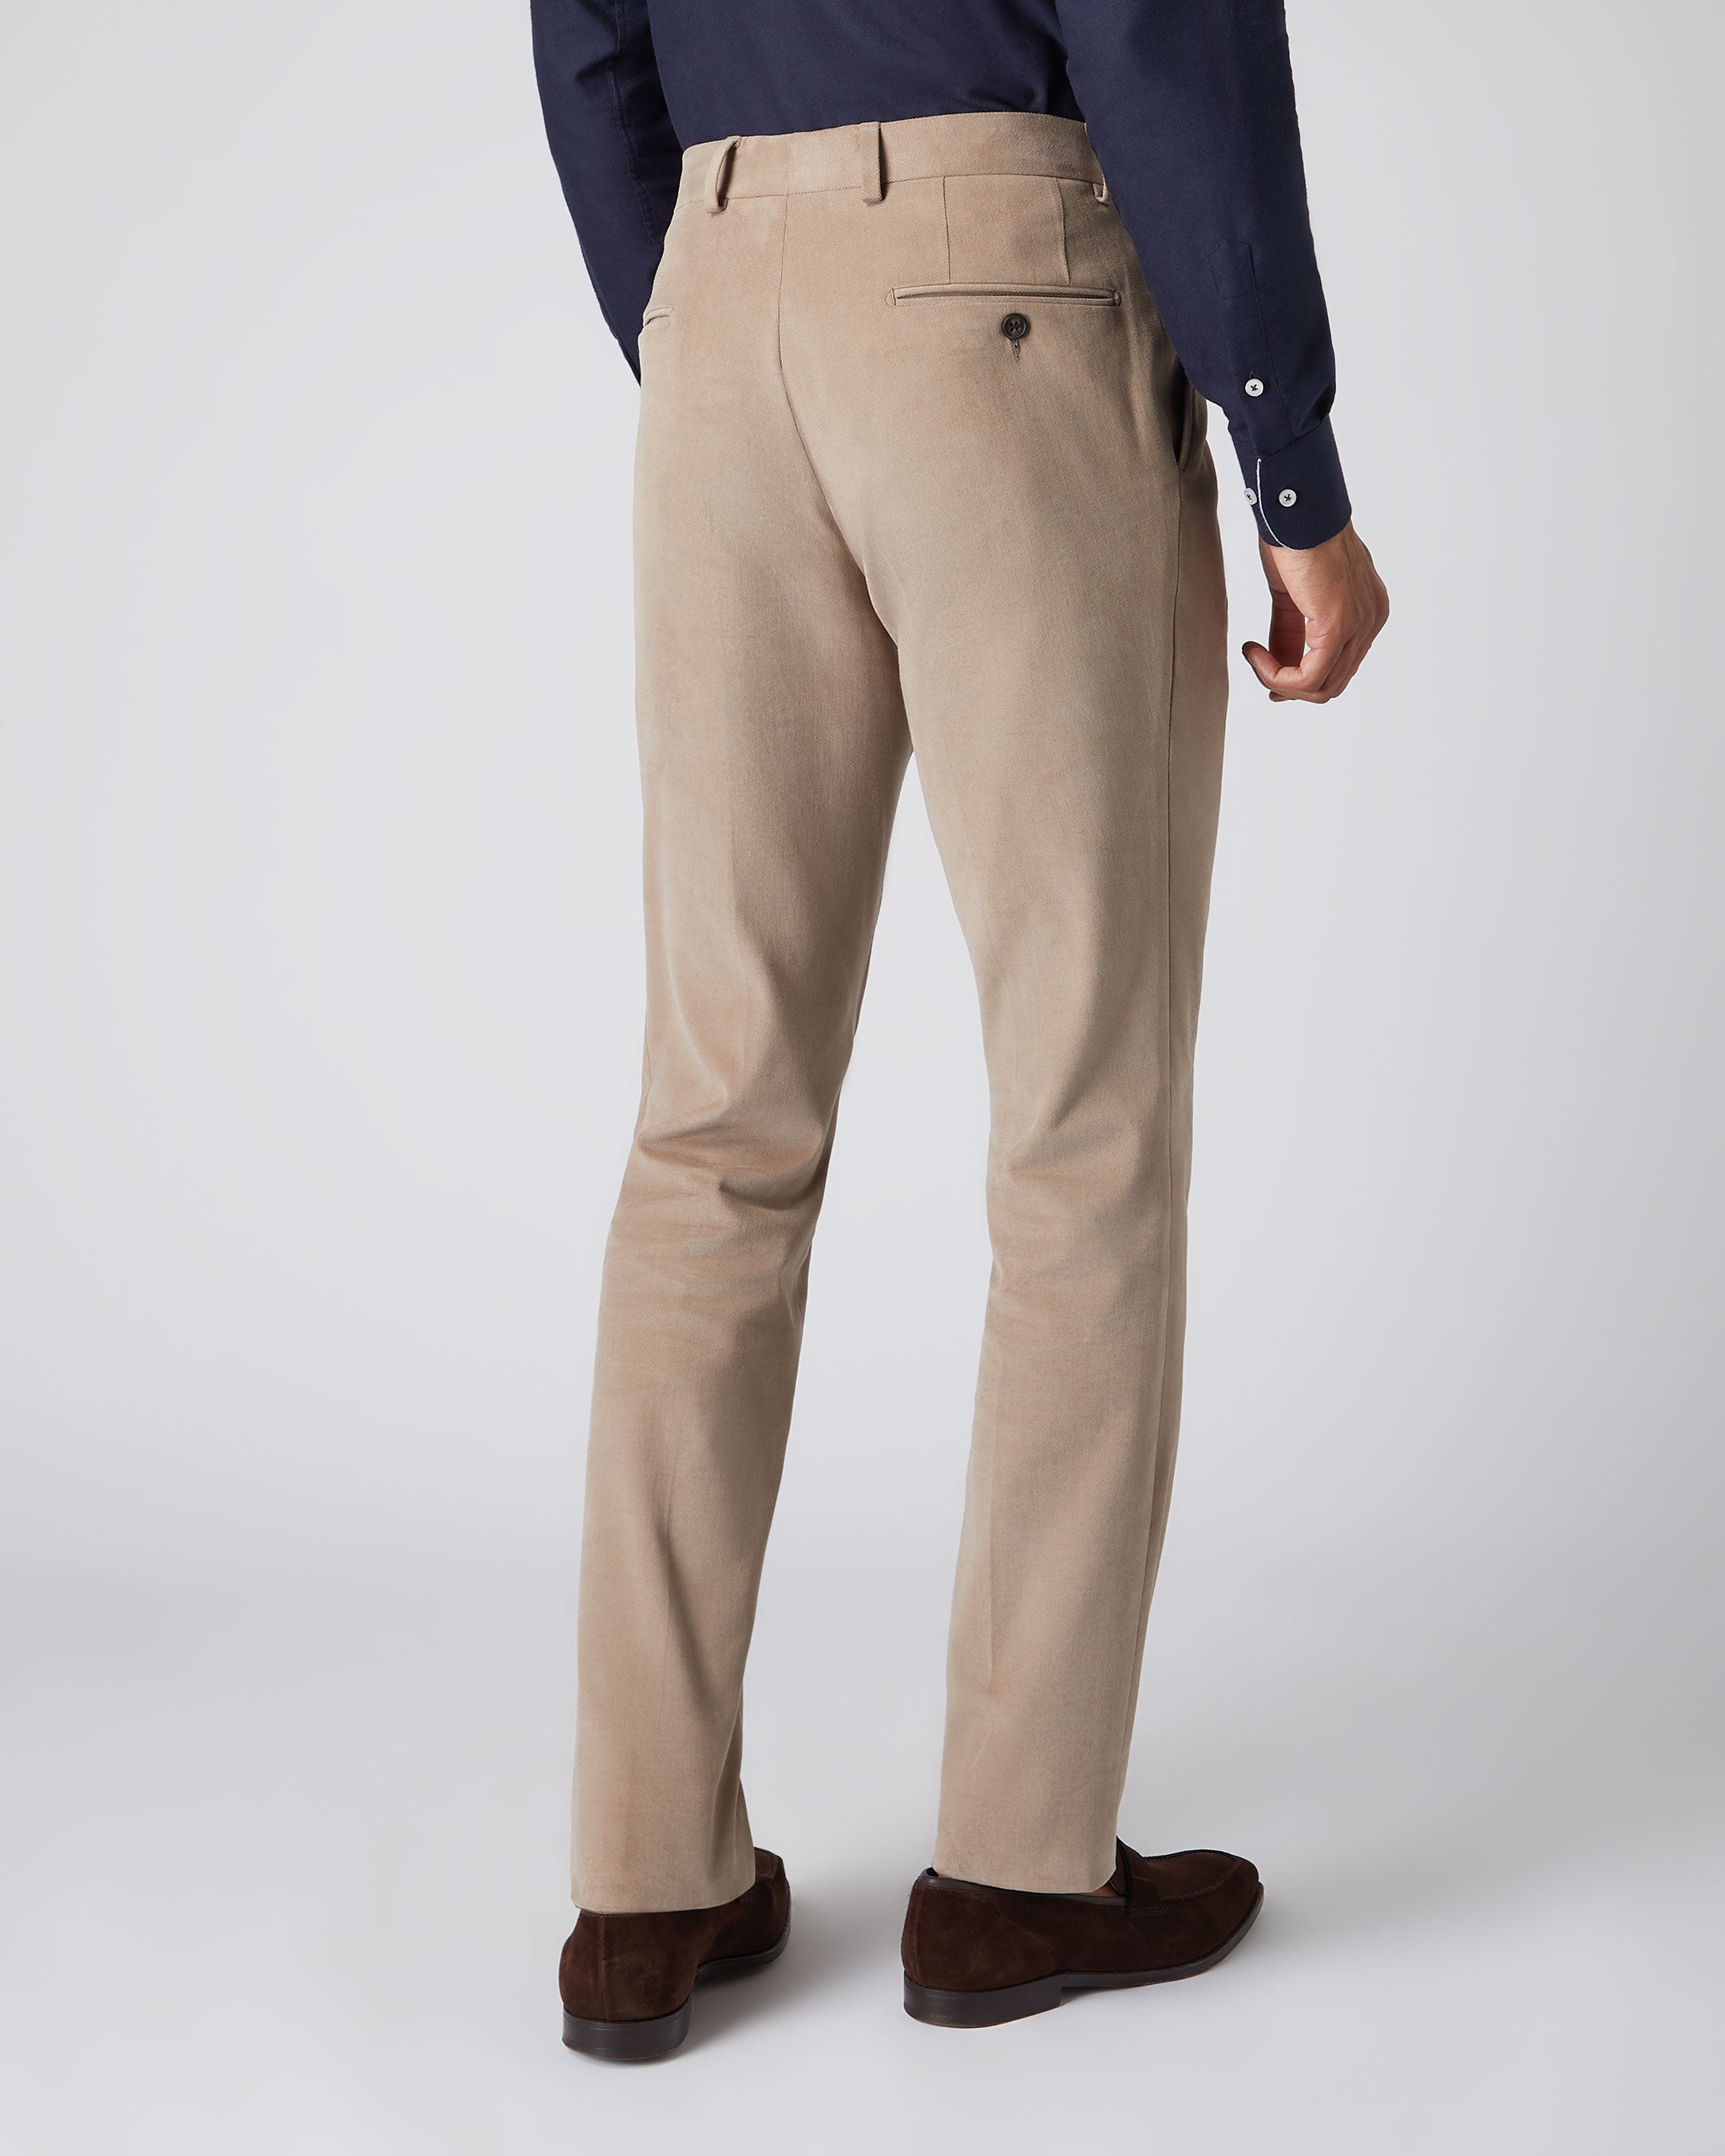 Light Grey Cotton Trouser For Men's – united18